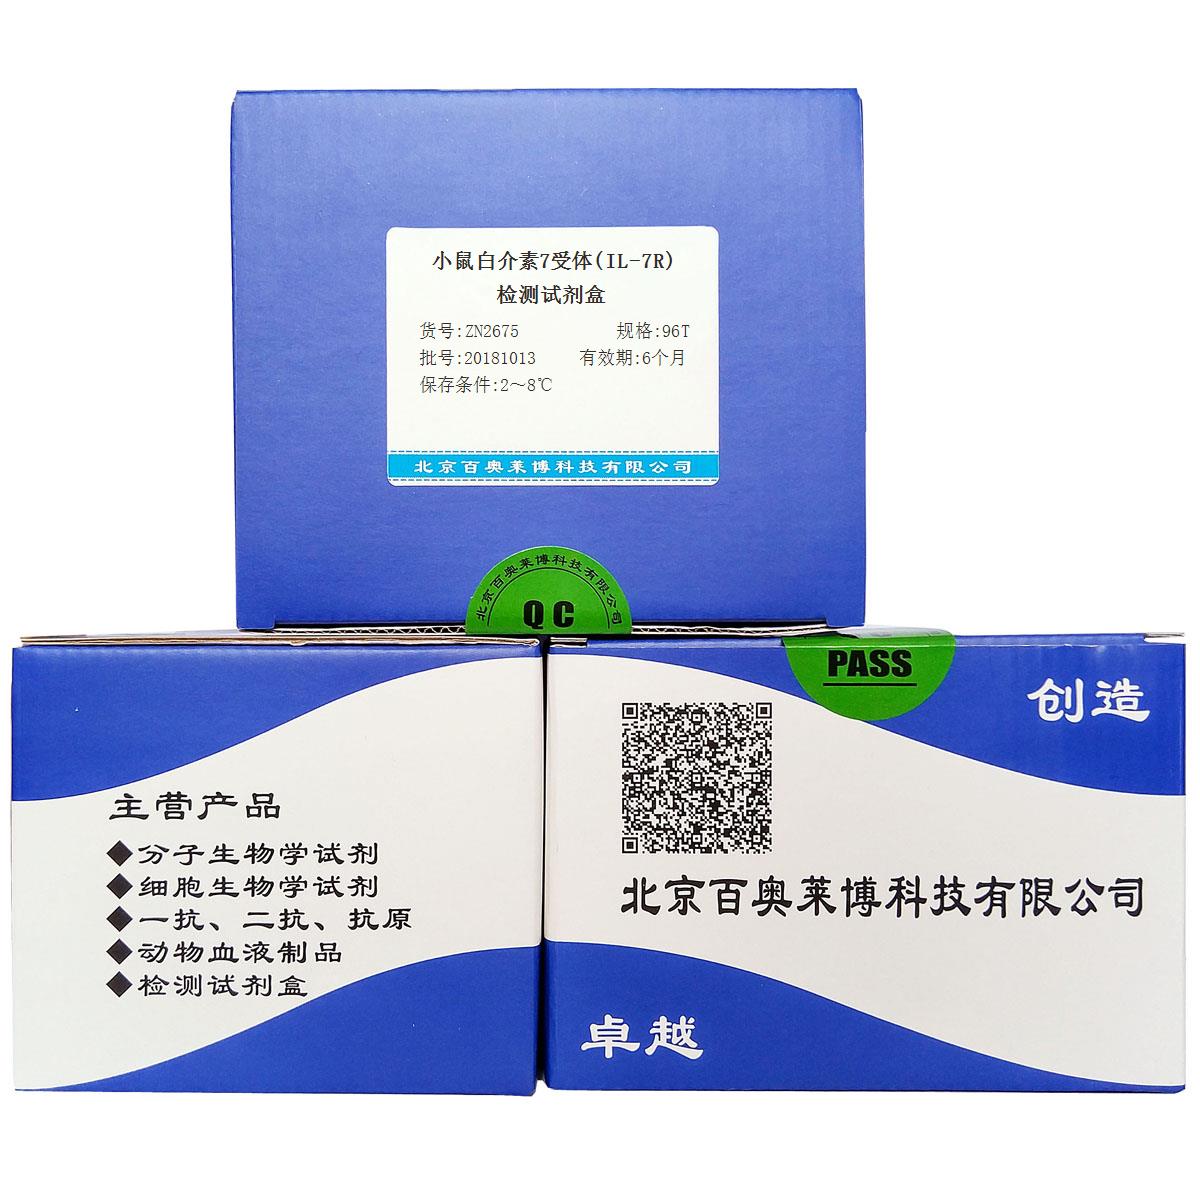 小鼠白介素7受体(IL-7R)检测试剂盒